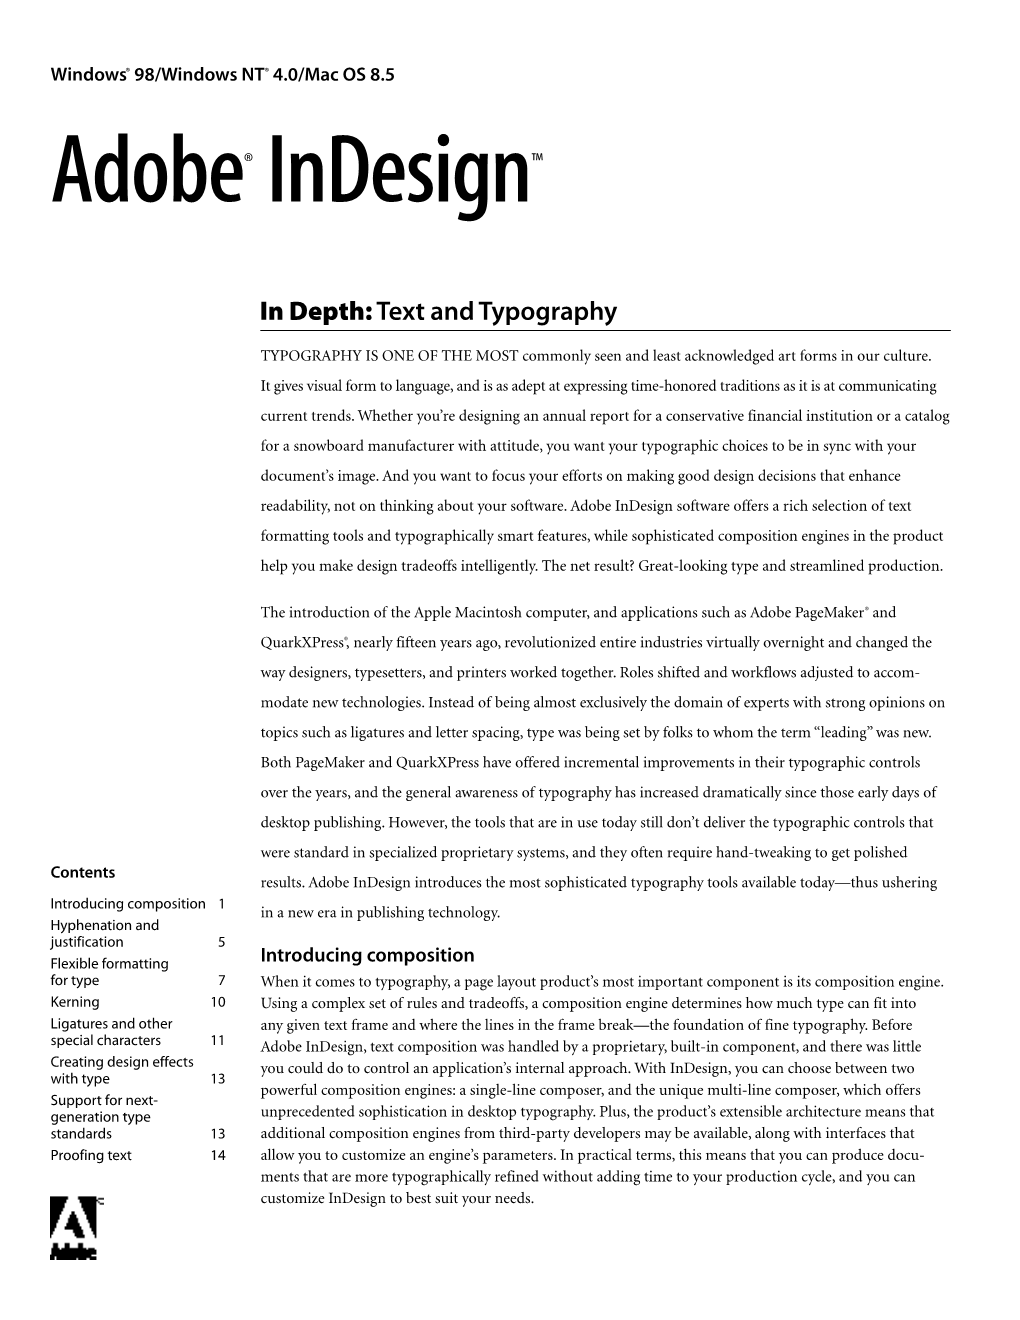 Adobe Indesign in Depth